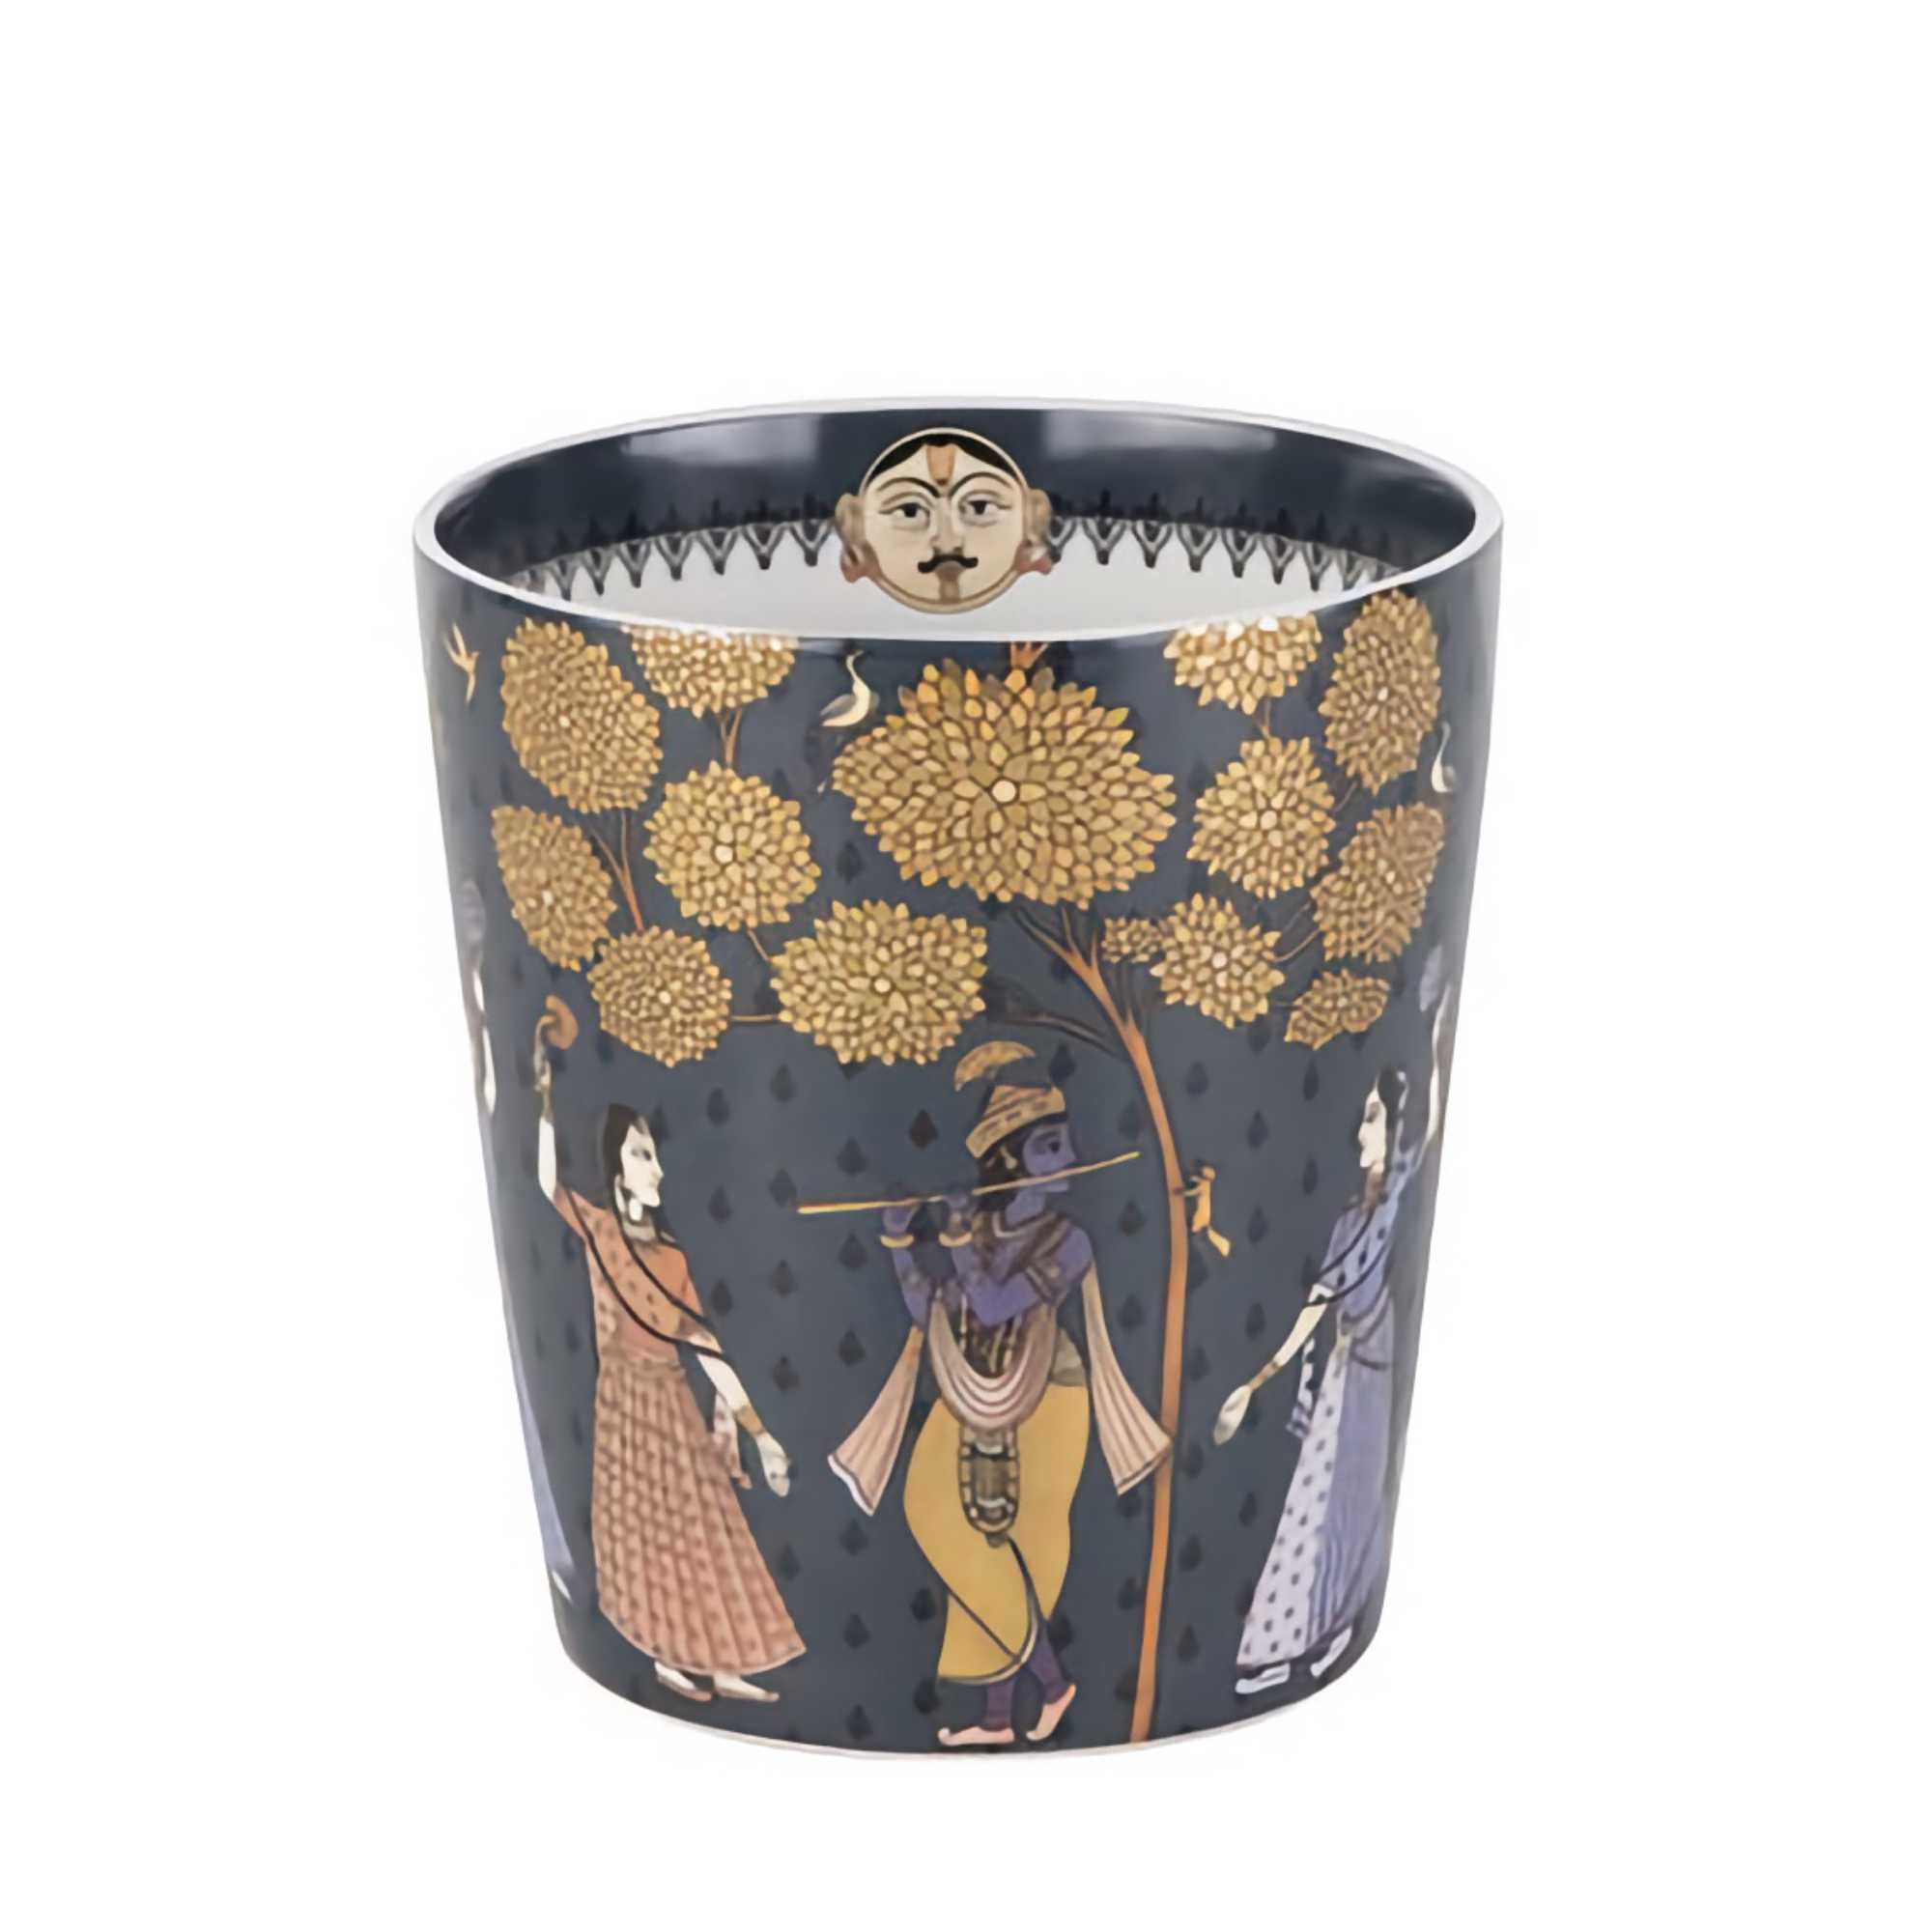 Images d'Orient Jangala small vase